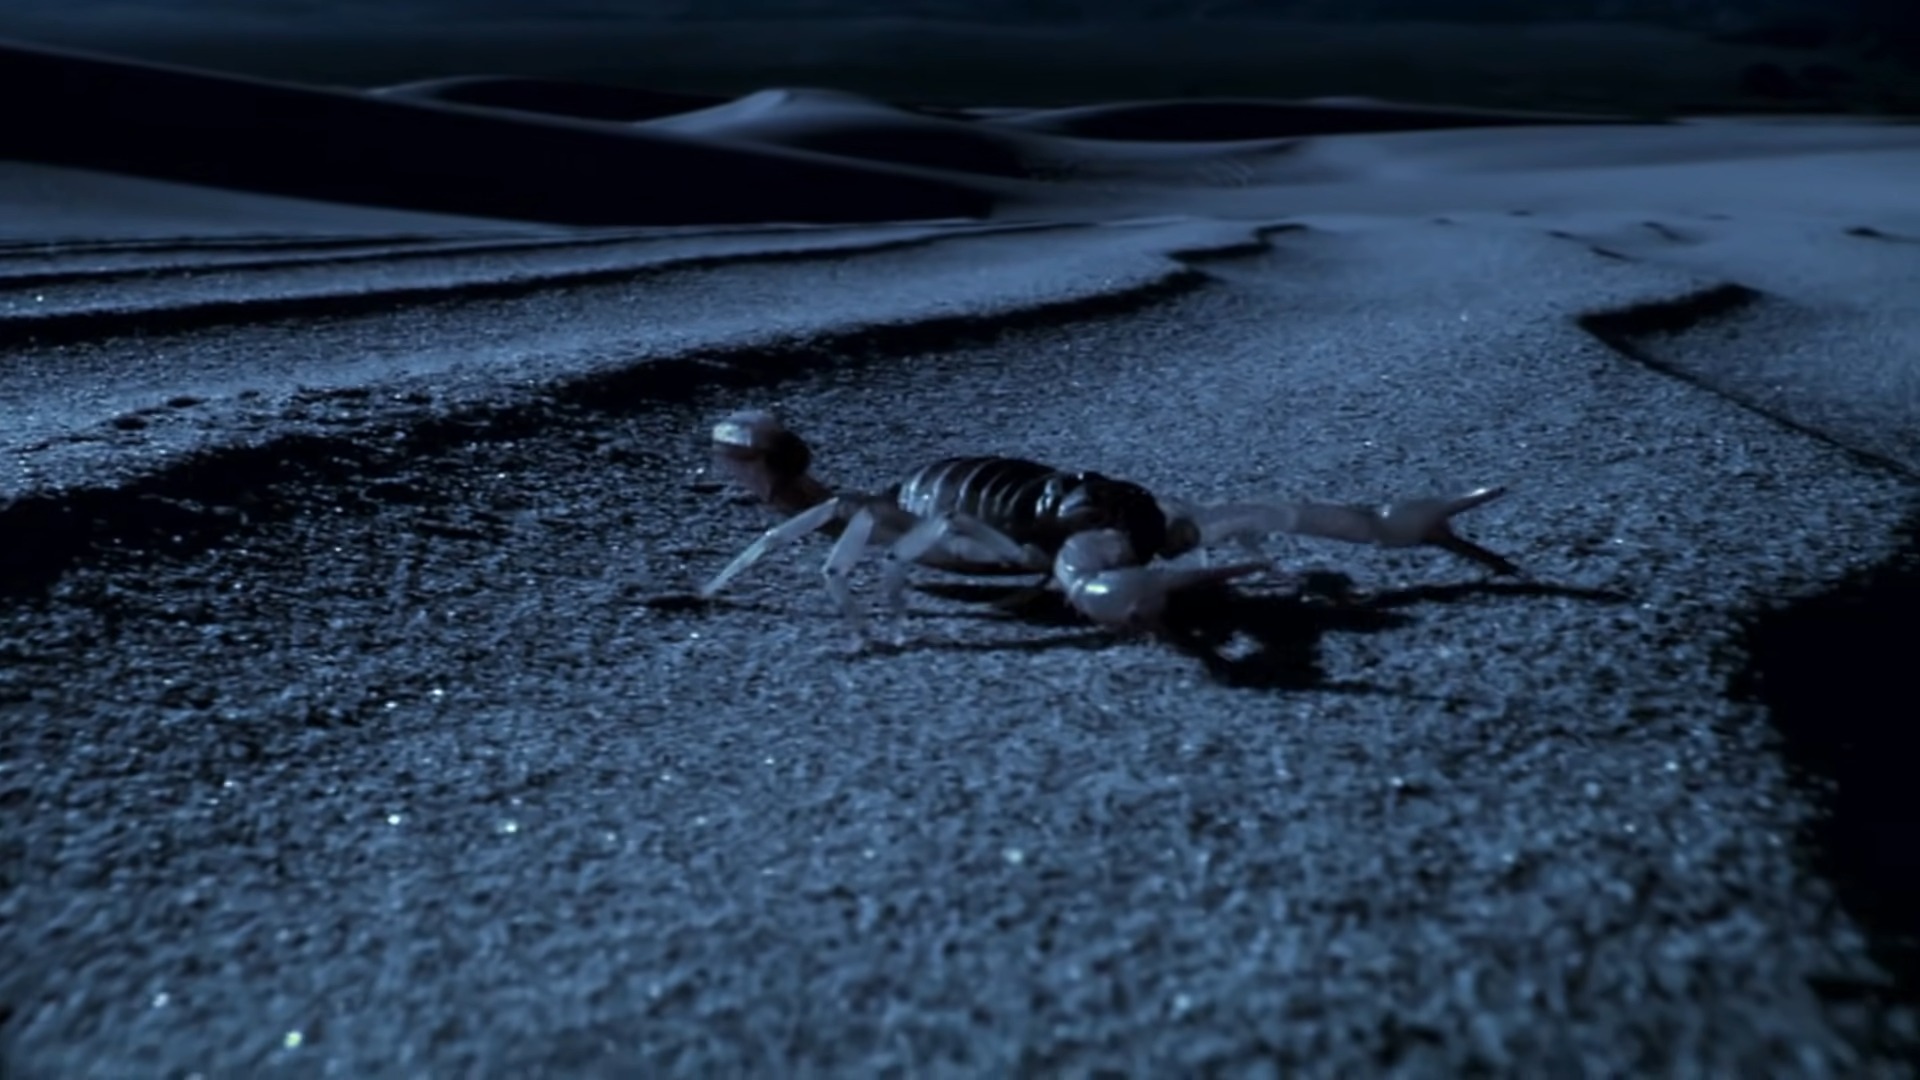 Scorpion Desert Night